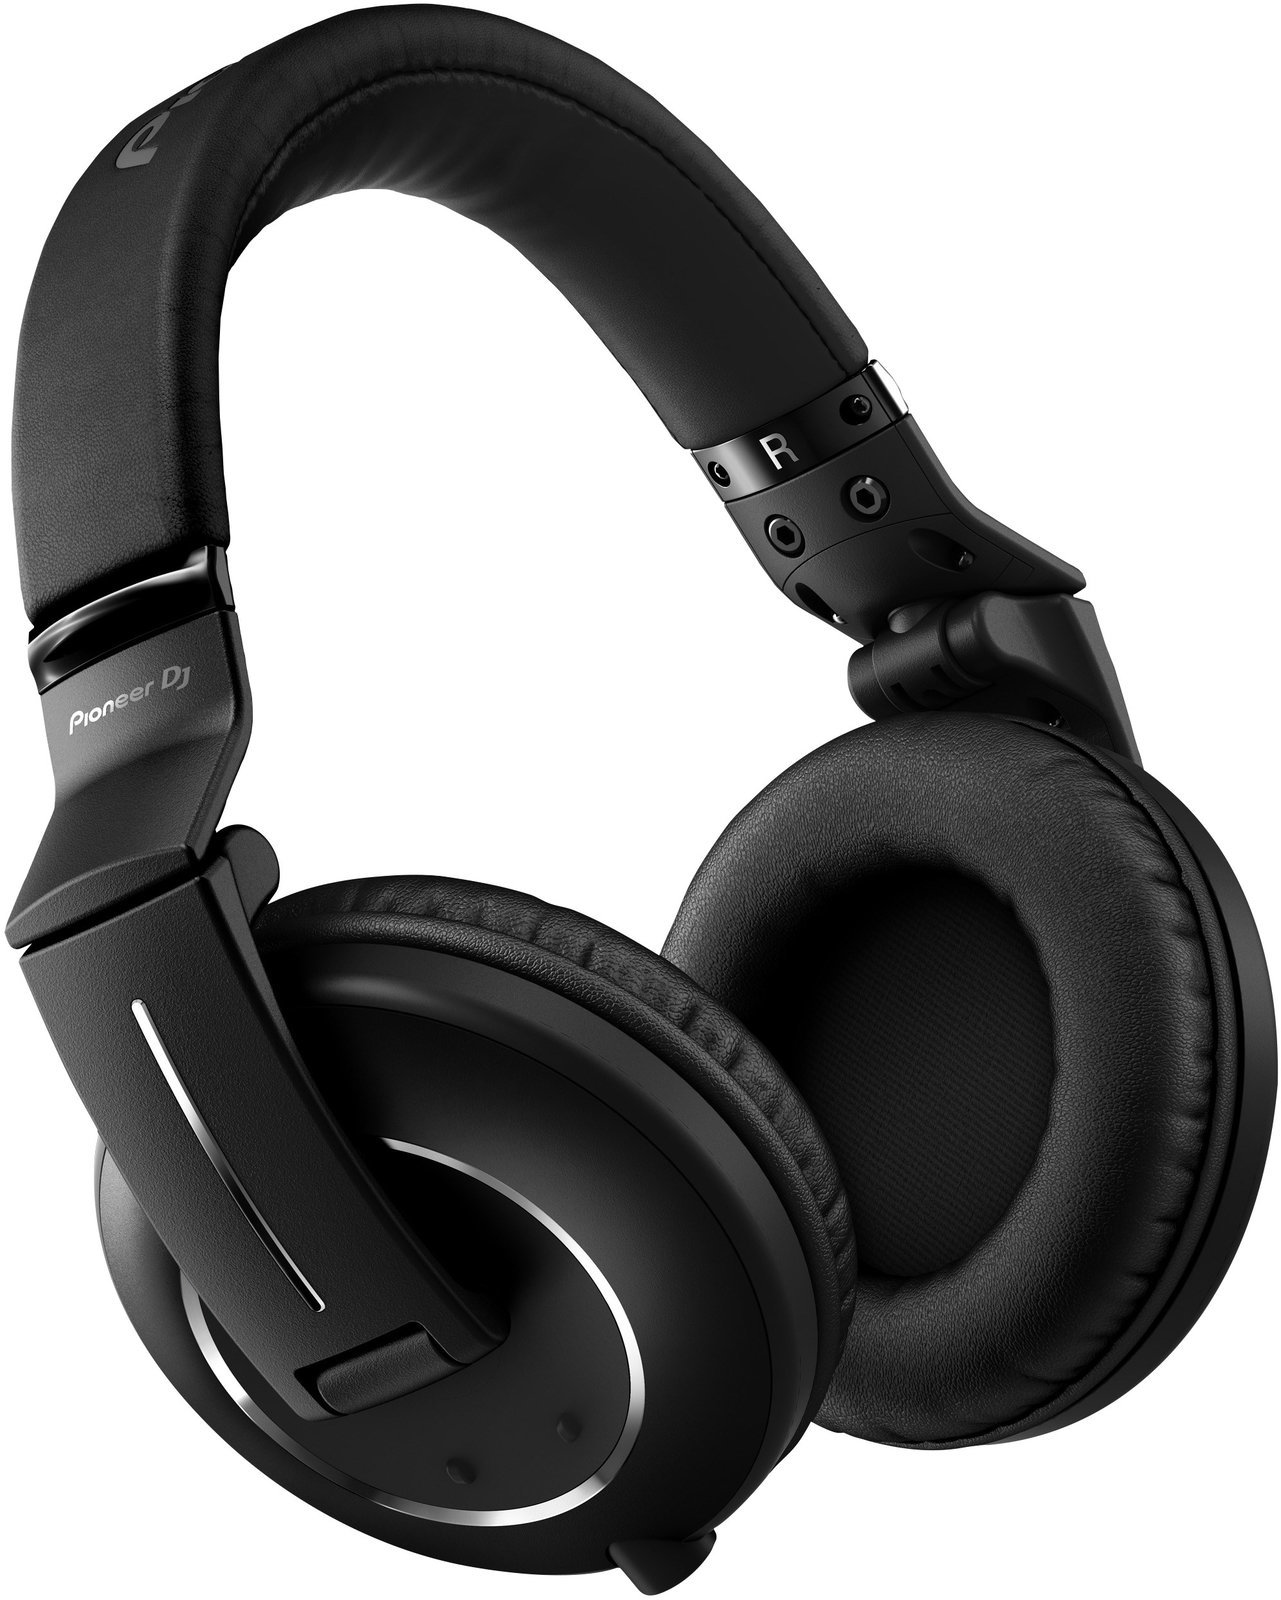 DJ Headphone Pioneer Dj HDJ-2000MK2-K